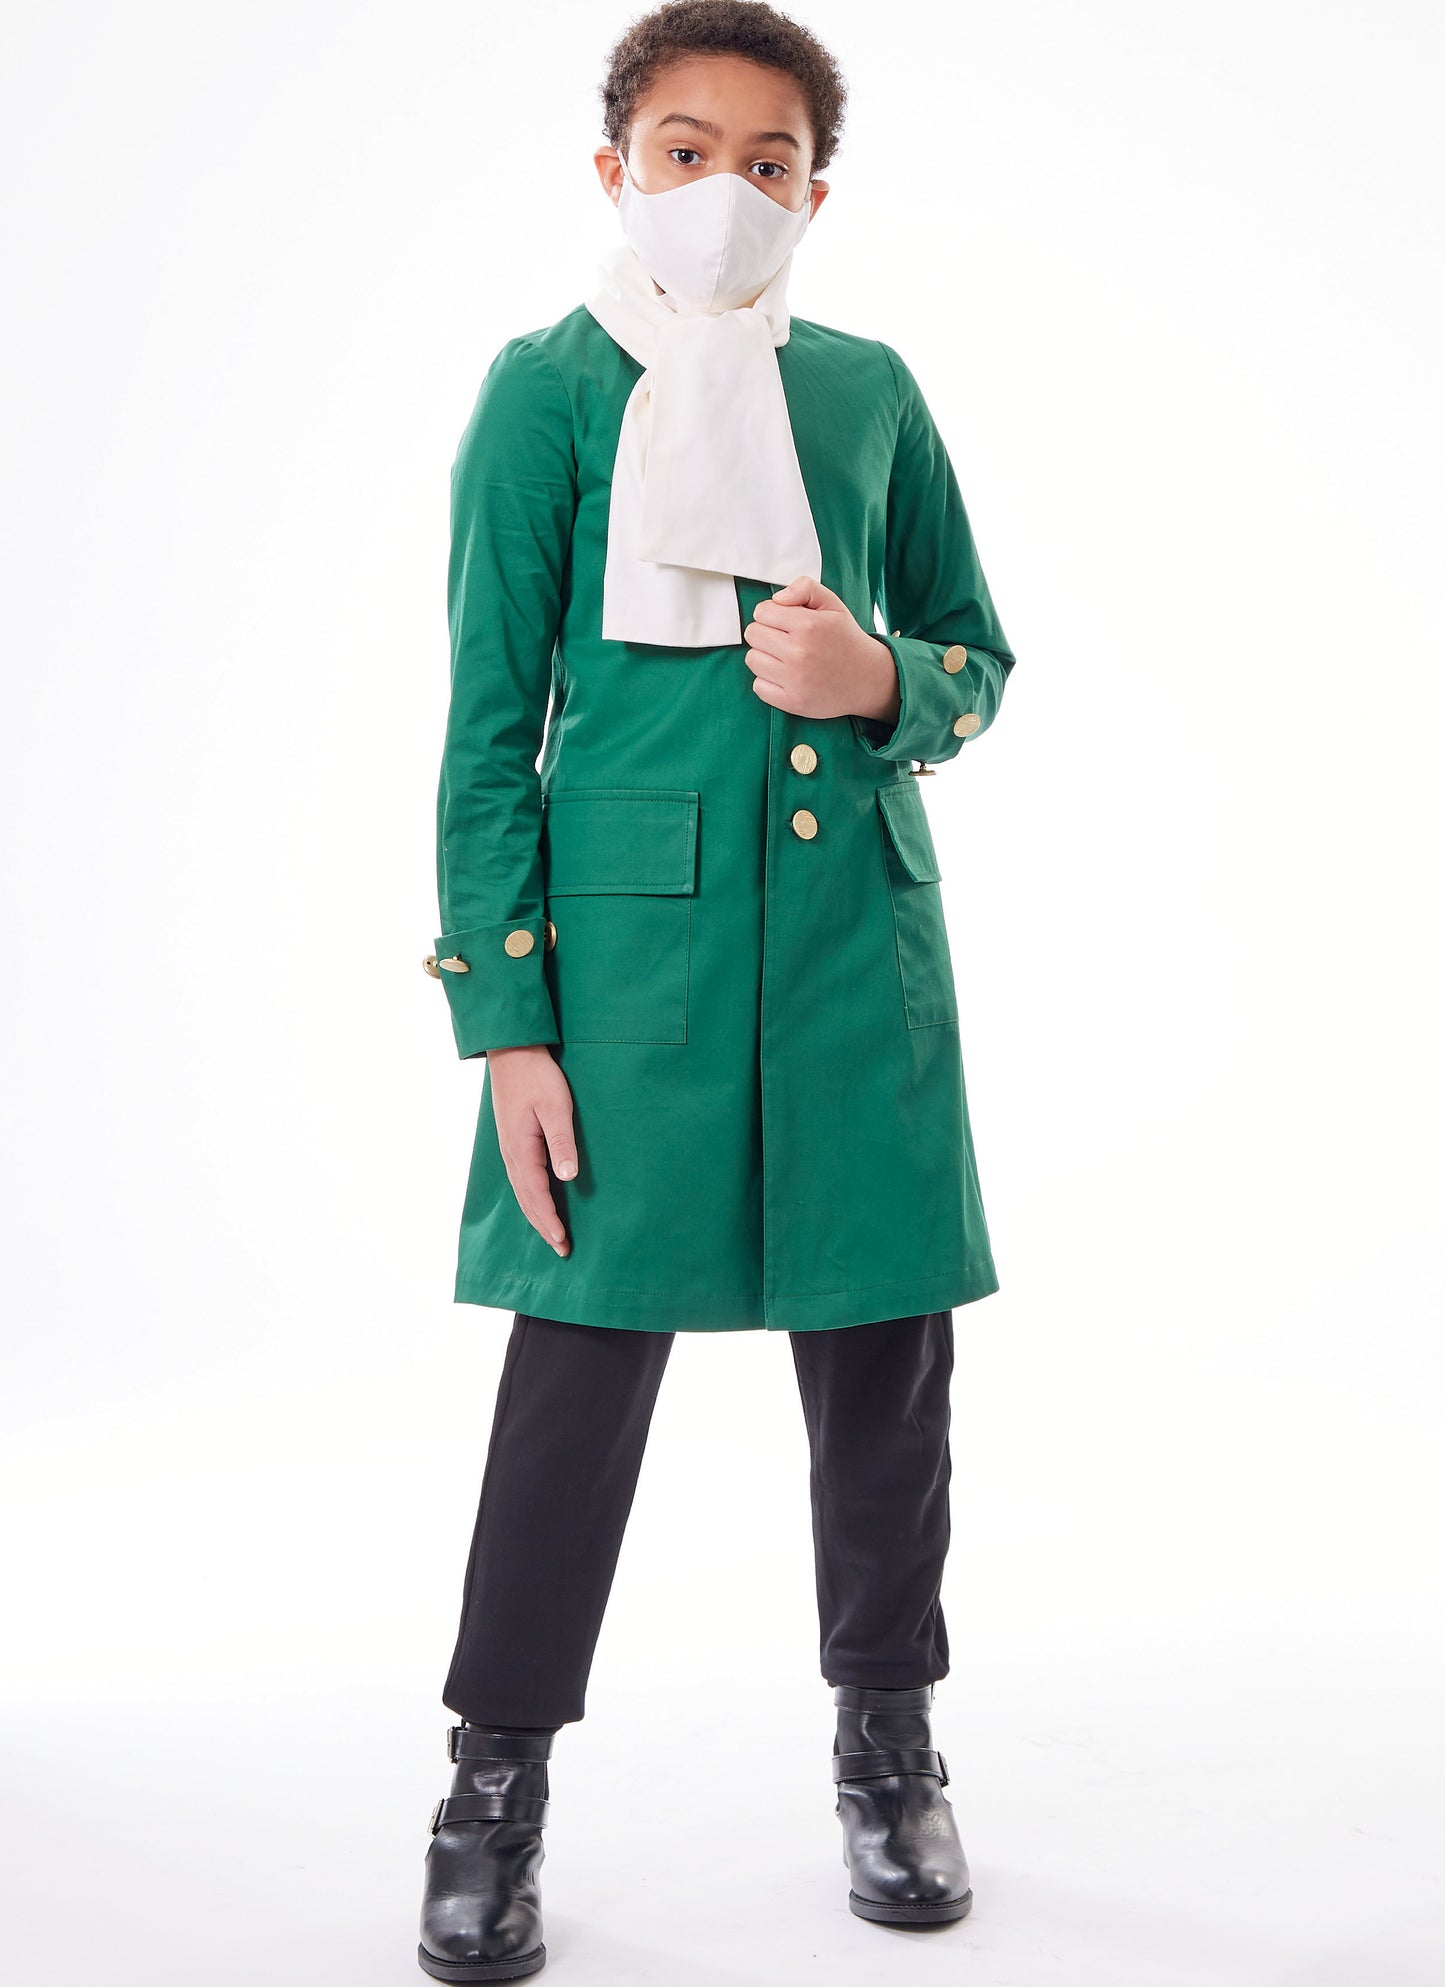 Symönster McCall´s 8227 - Utklädningskläder Historisk kostym - Flicka Pojke - Maskerad | Bild 9